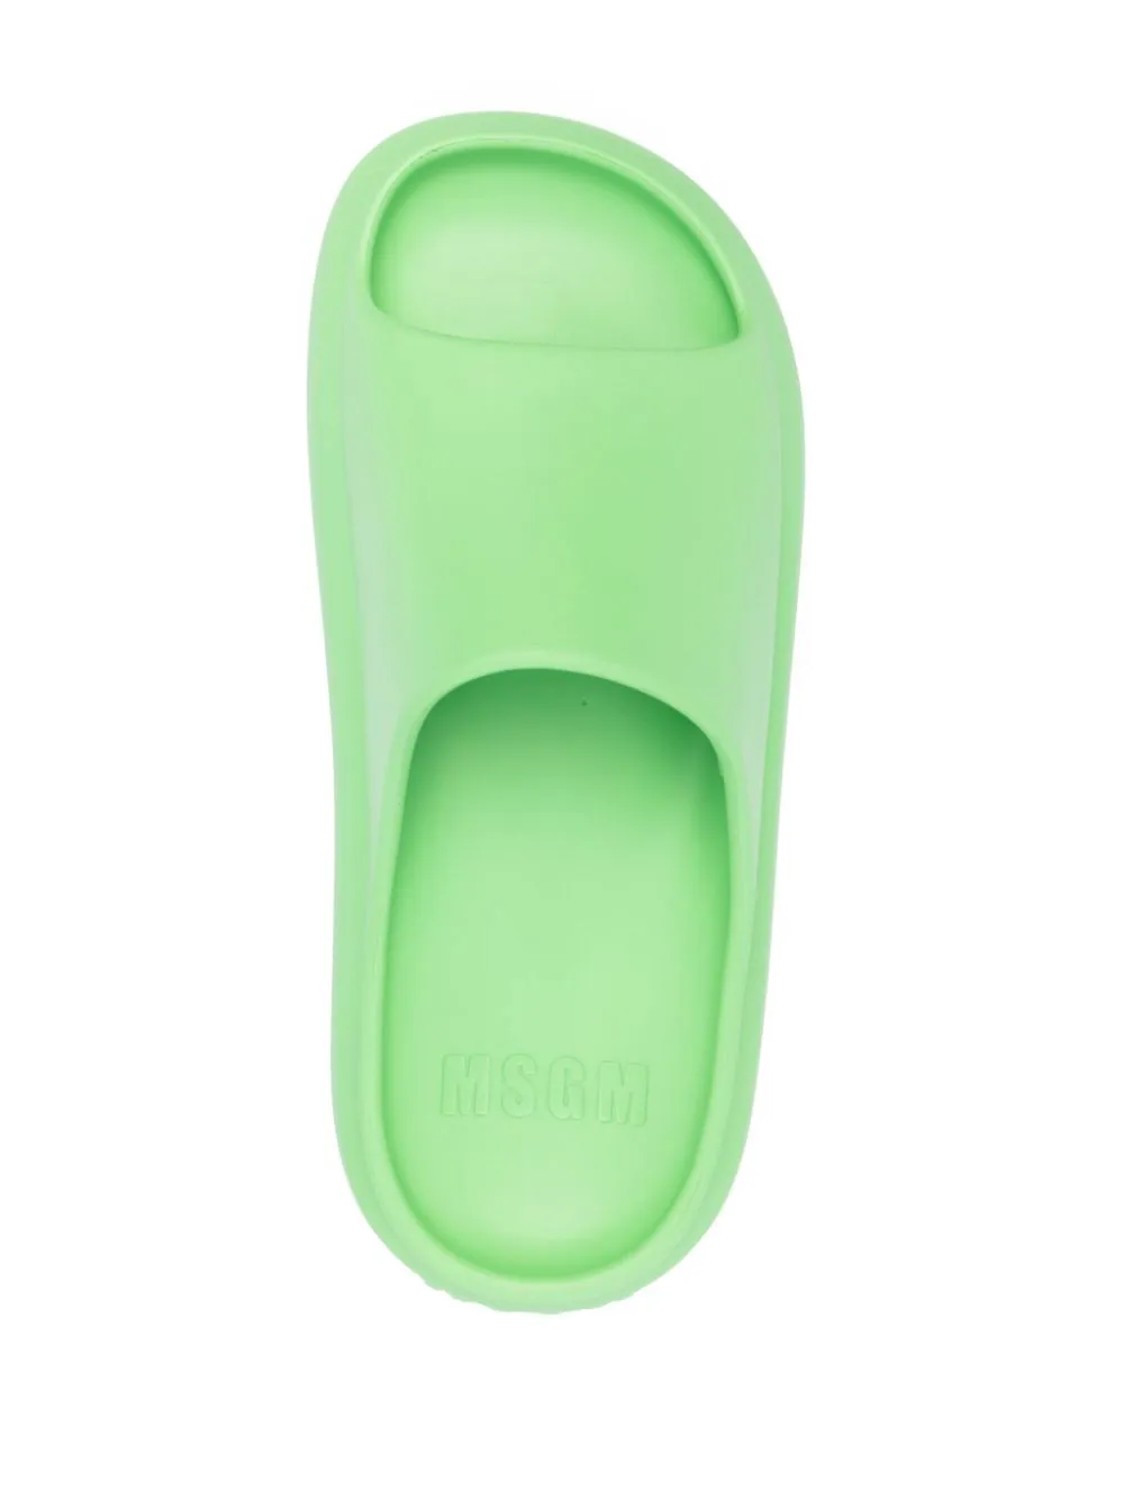 shop MSGM  Scarpe: Scarpe MSGM, ciabatta, chunky pool, in colore verde.

Composizione: 100% eva. number 2680